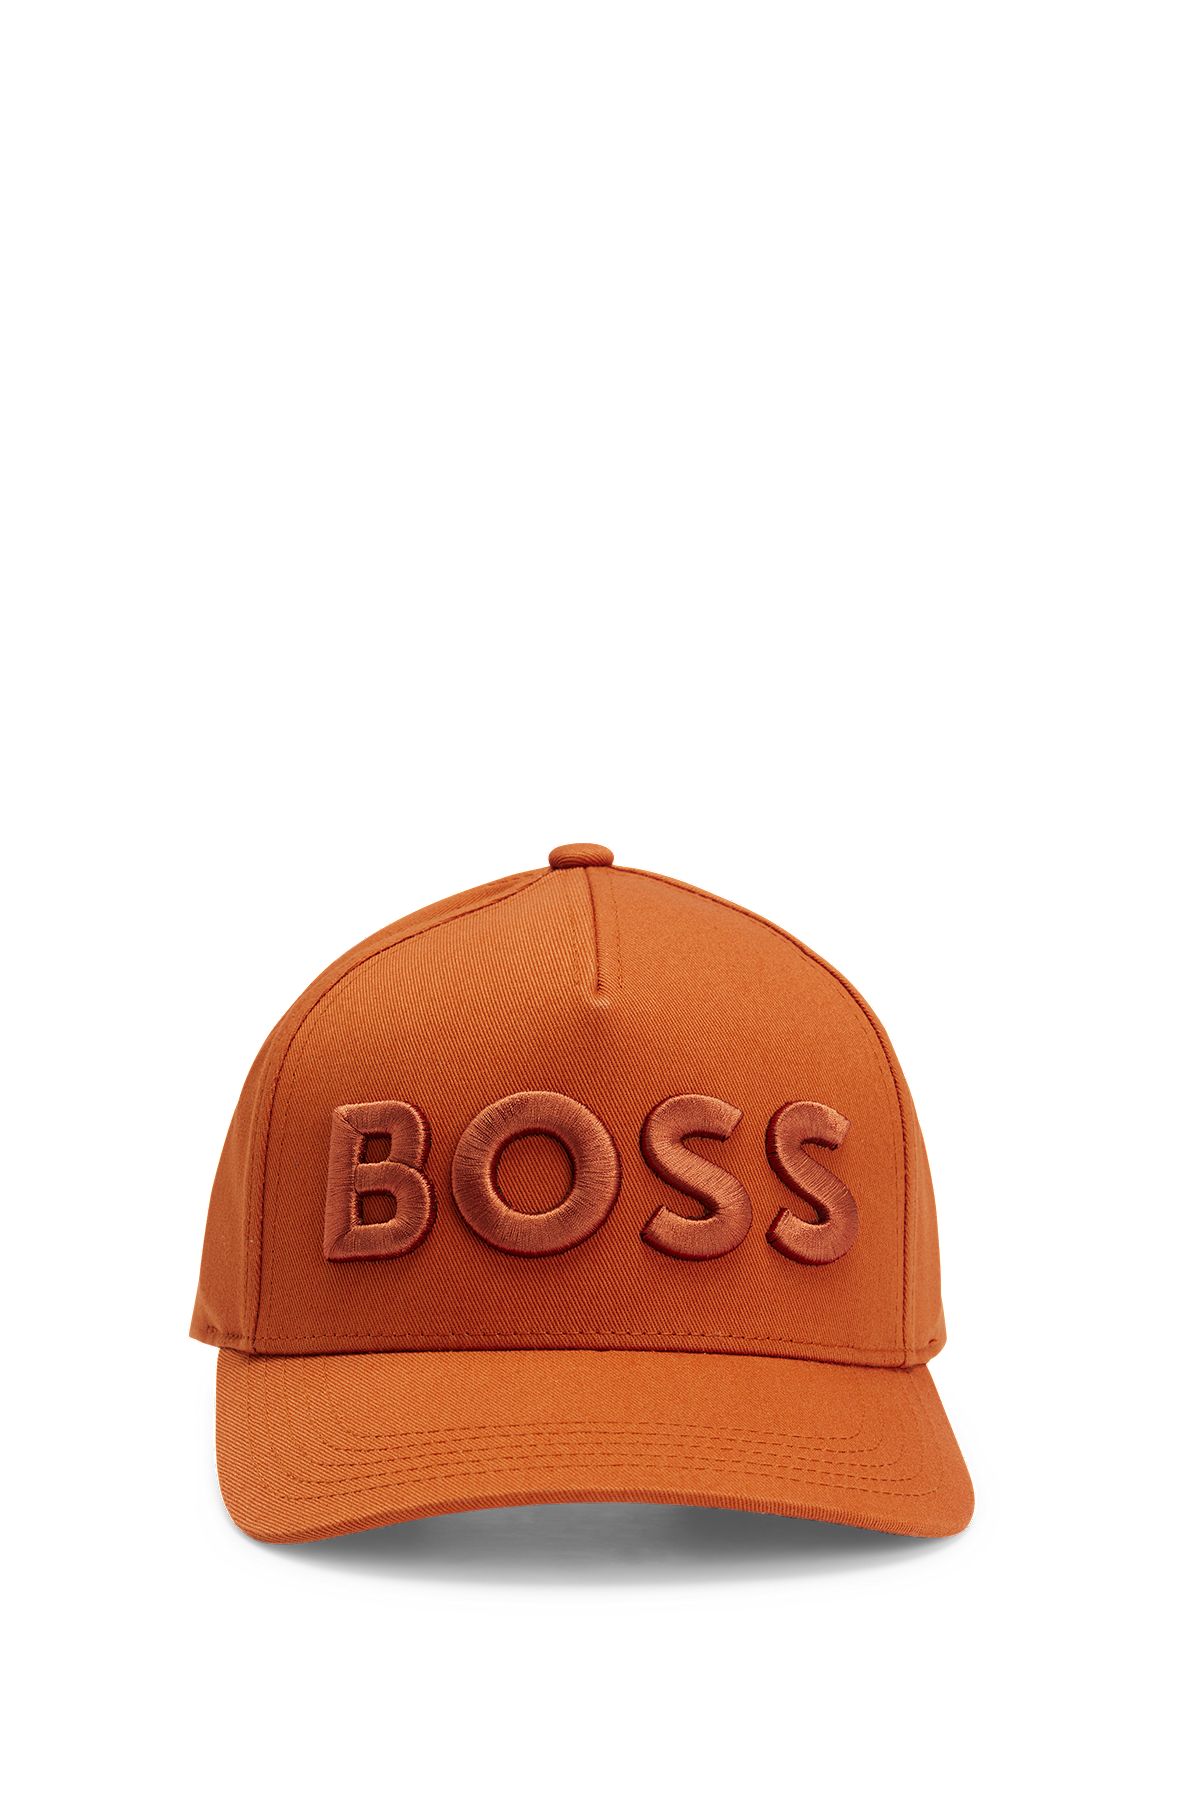 & Orange BOSS | | Hats HUGO Caps Men\'s